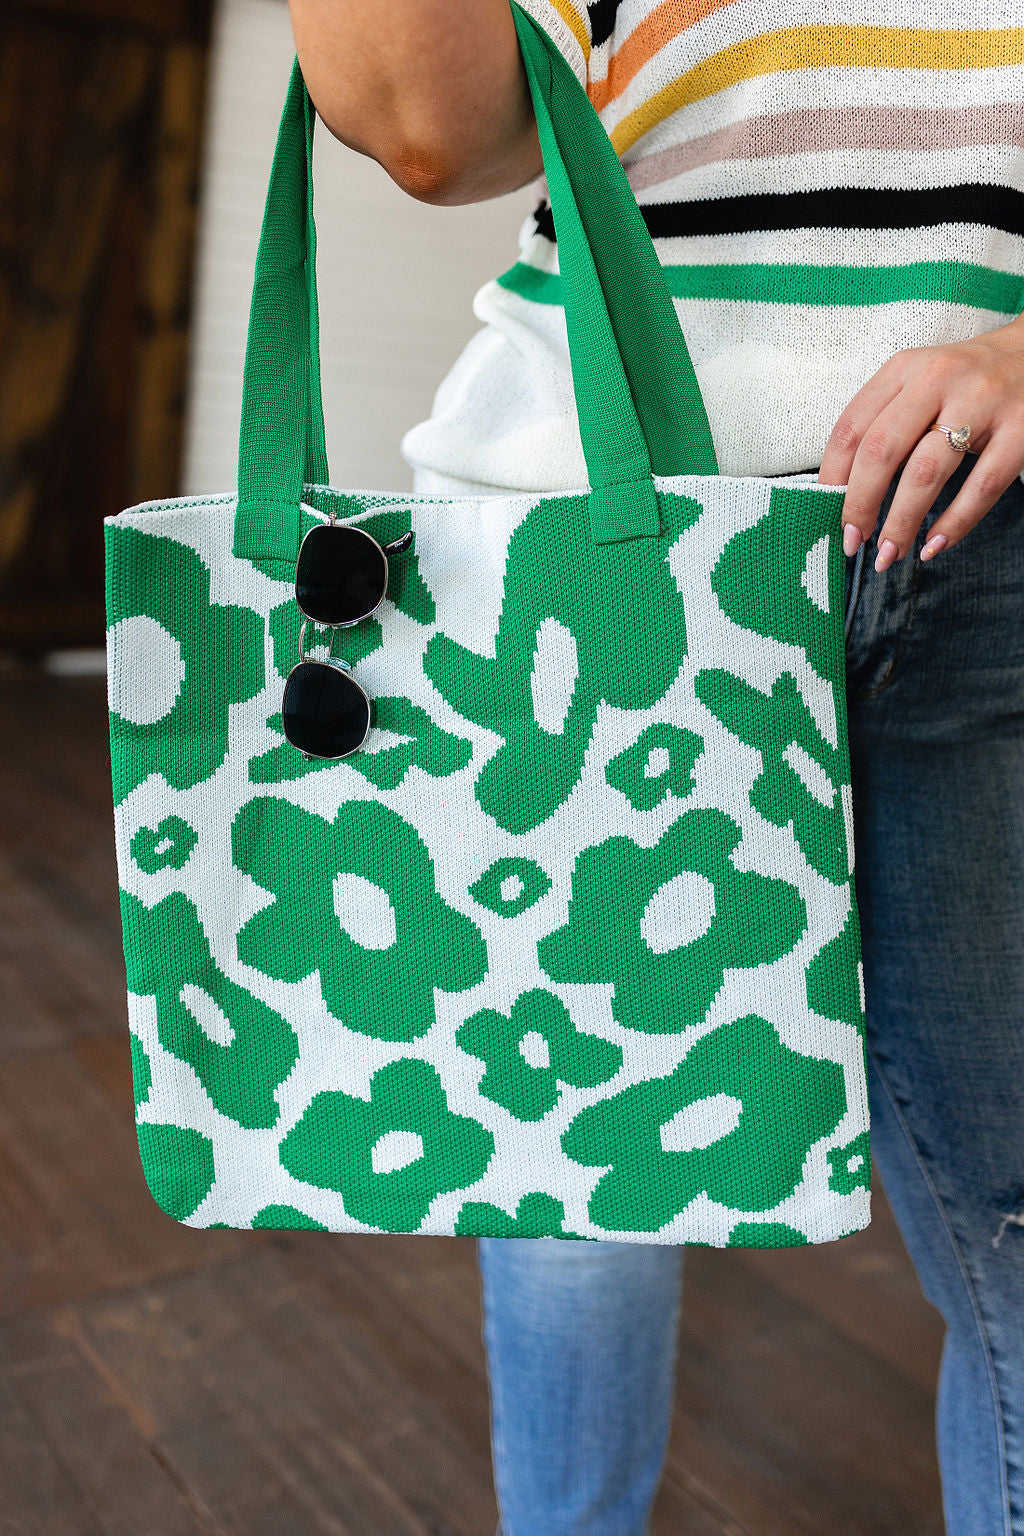 Chloé Luxury Designer Bags New Arrivals | Chloé US official site